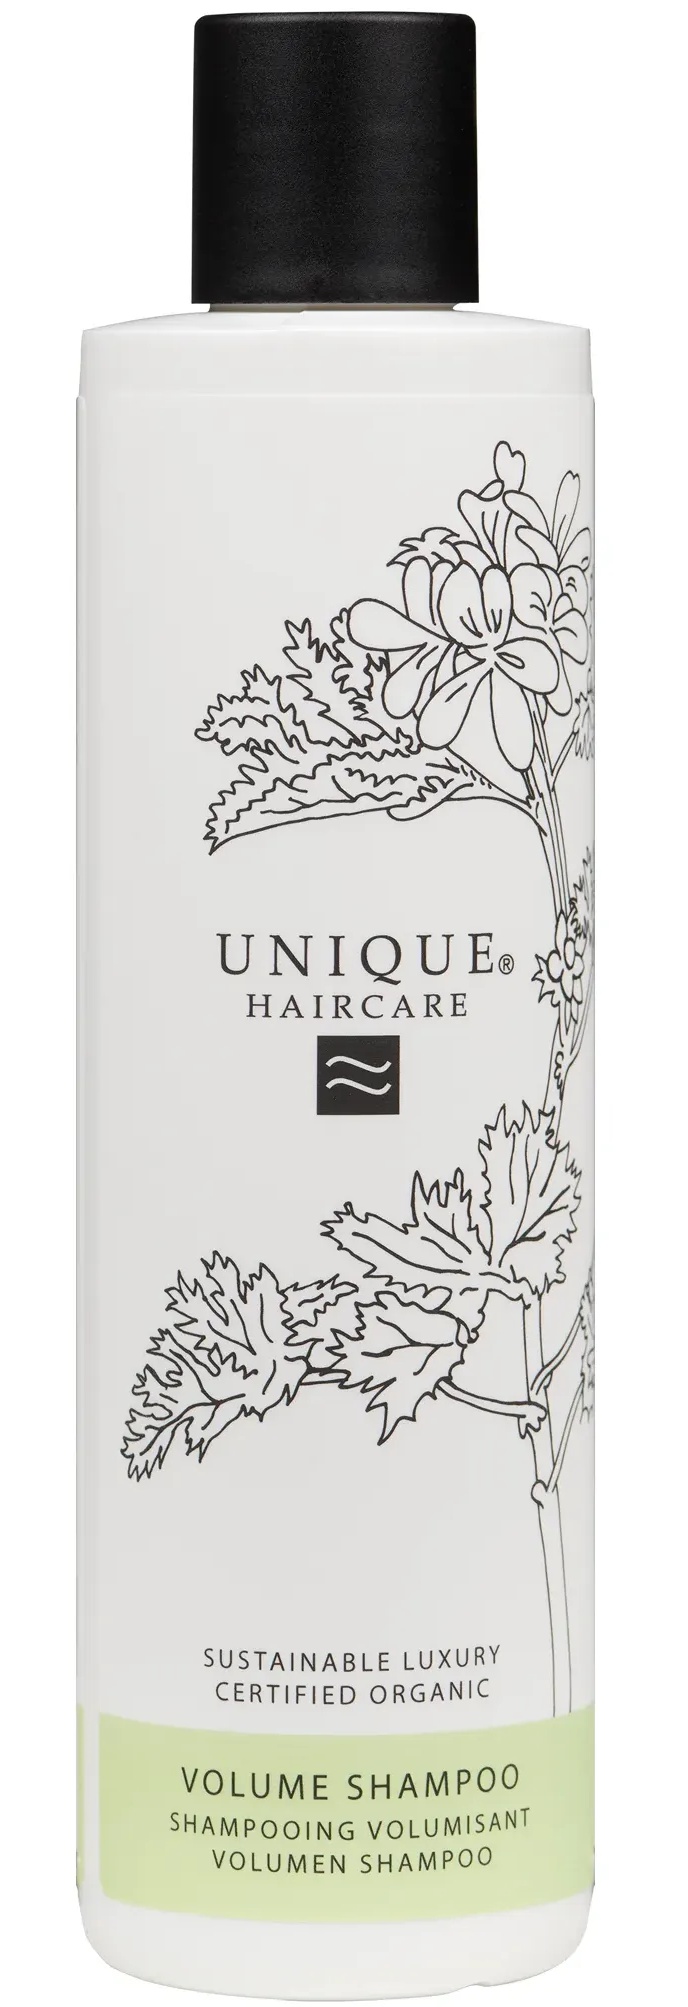 Unique Haircare Volume Shampoo